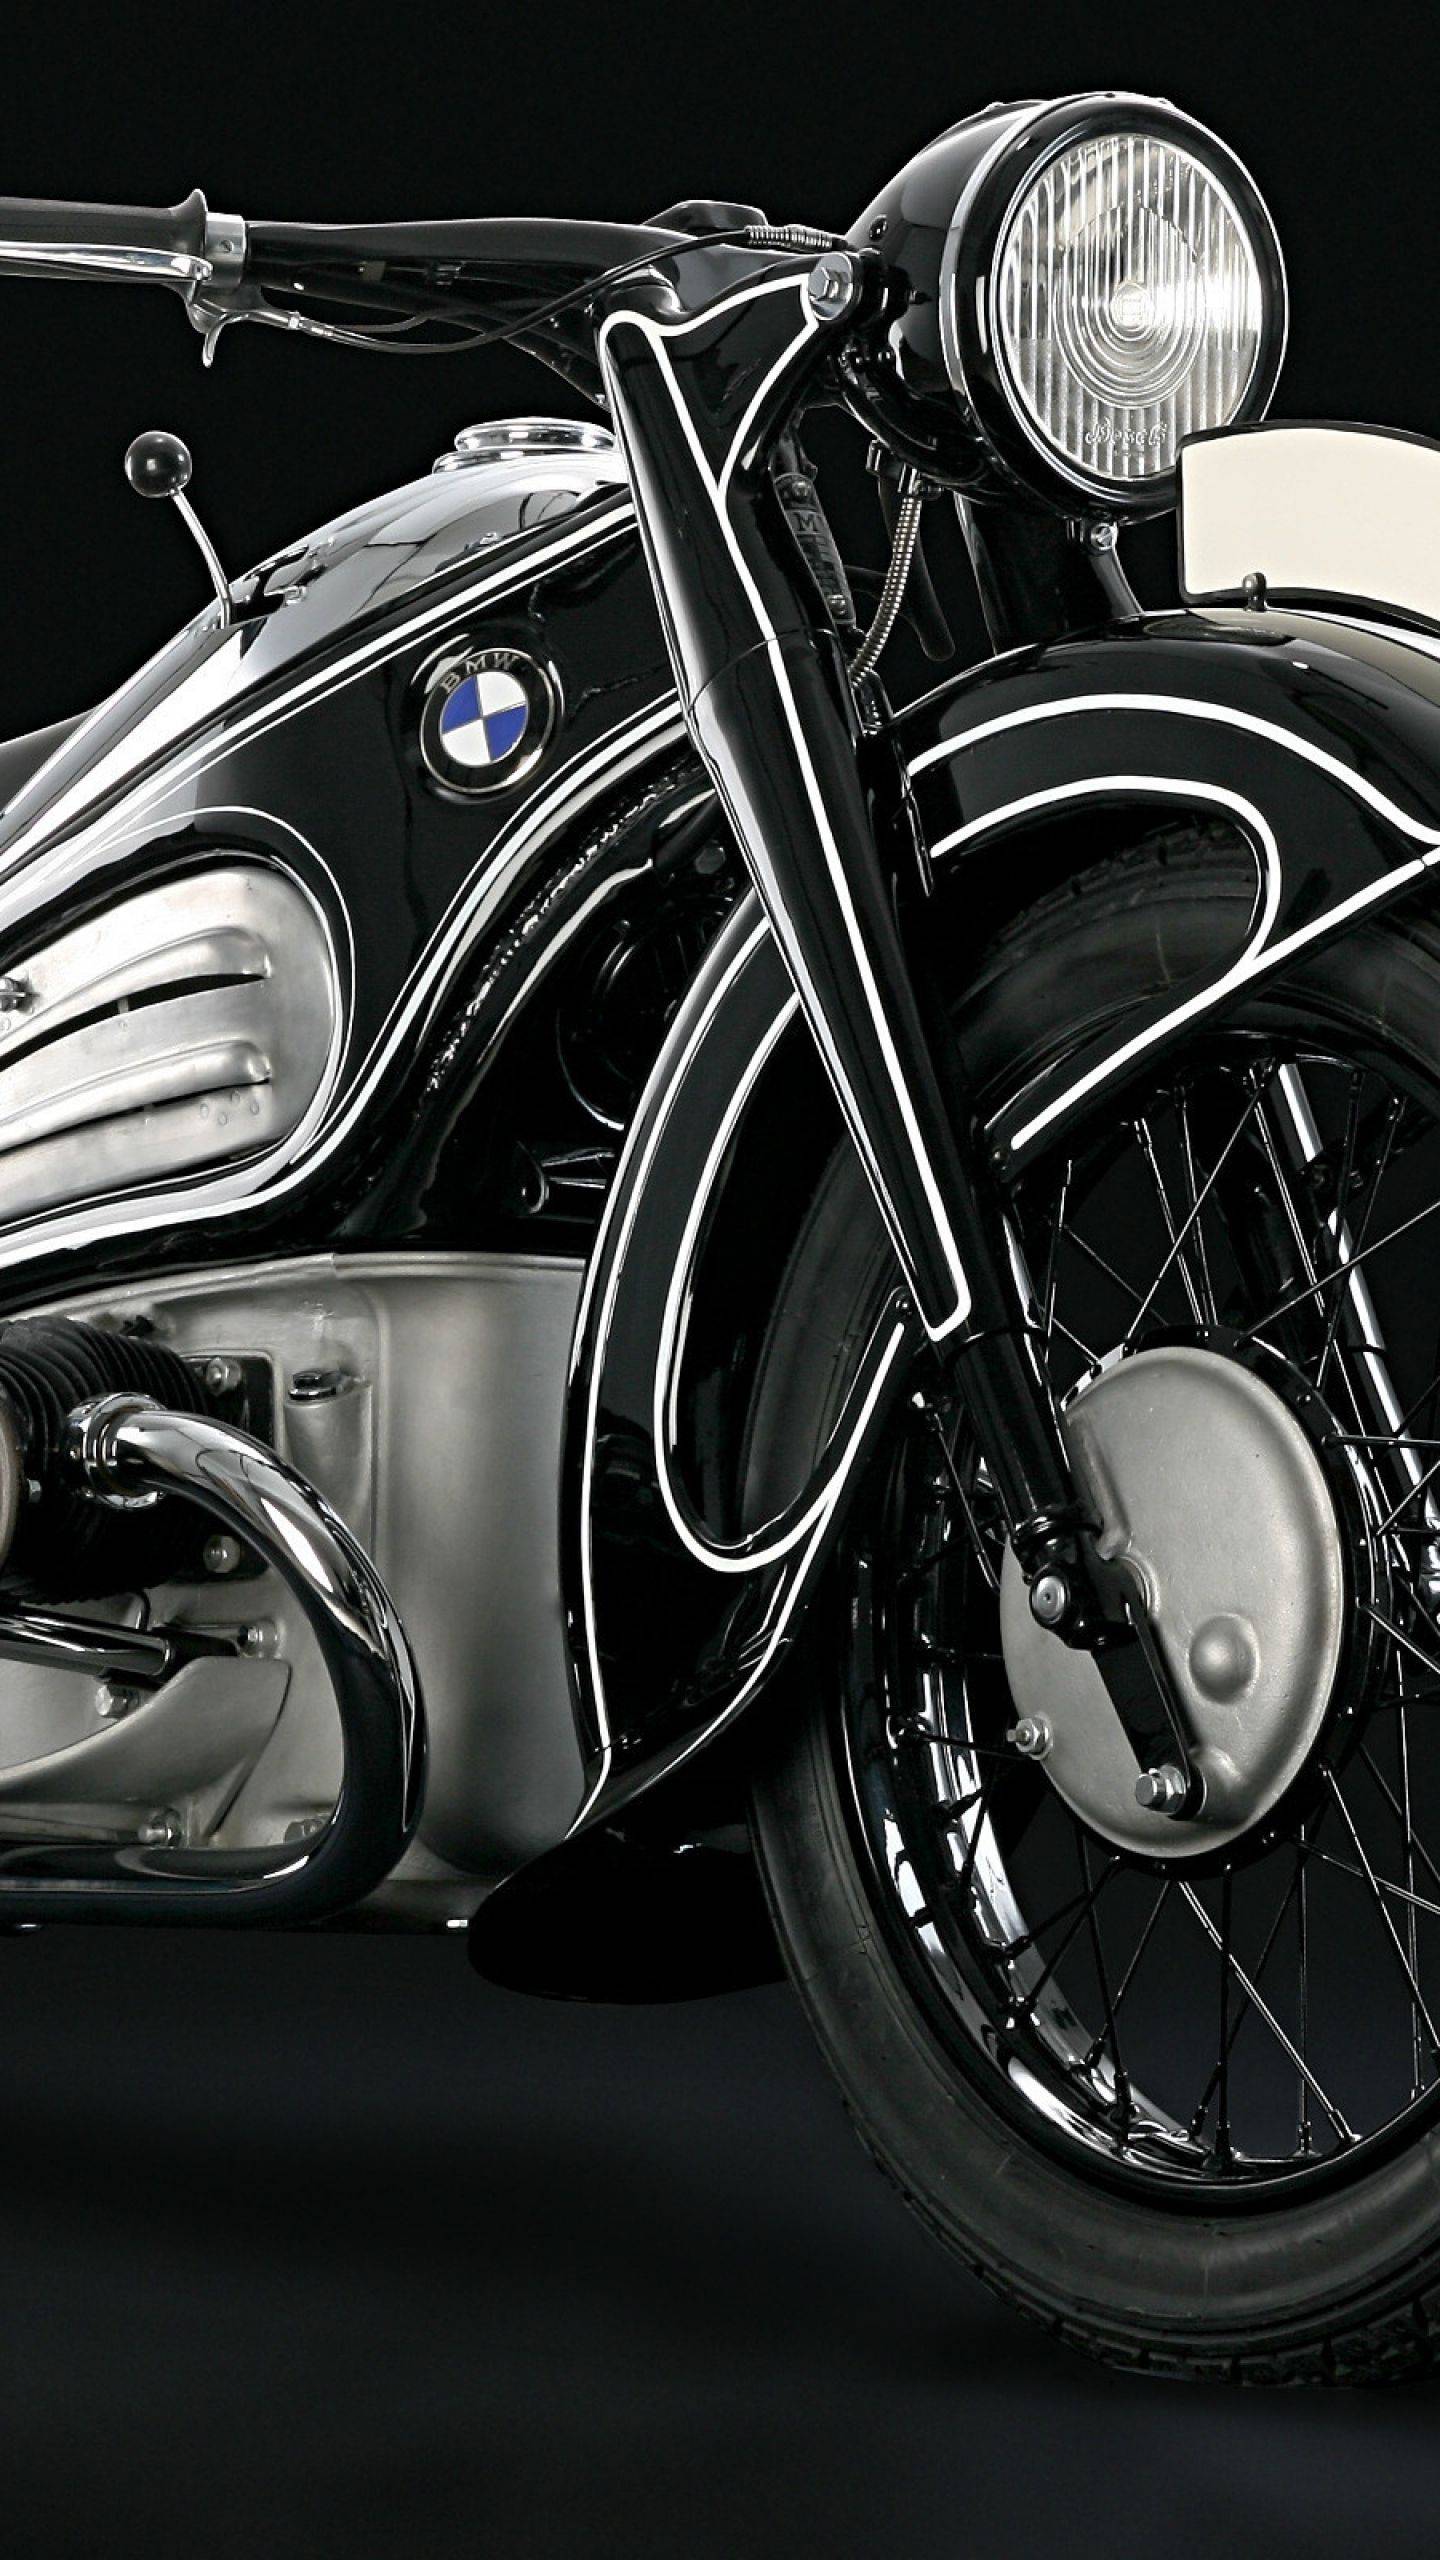 Wallpaper de motos tunadas para celular em HD